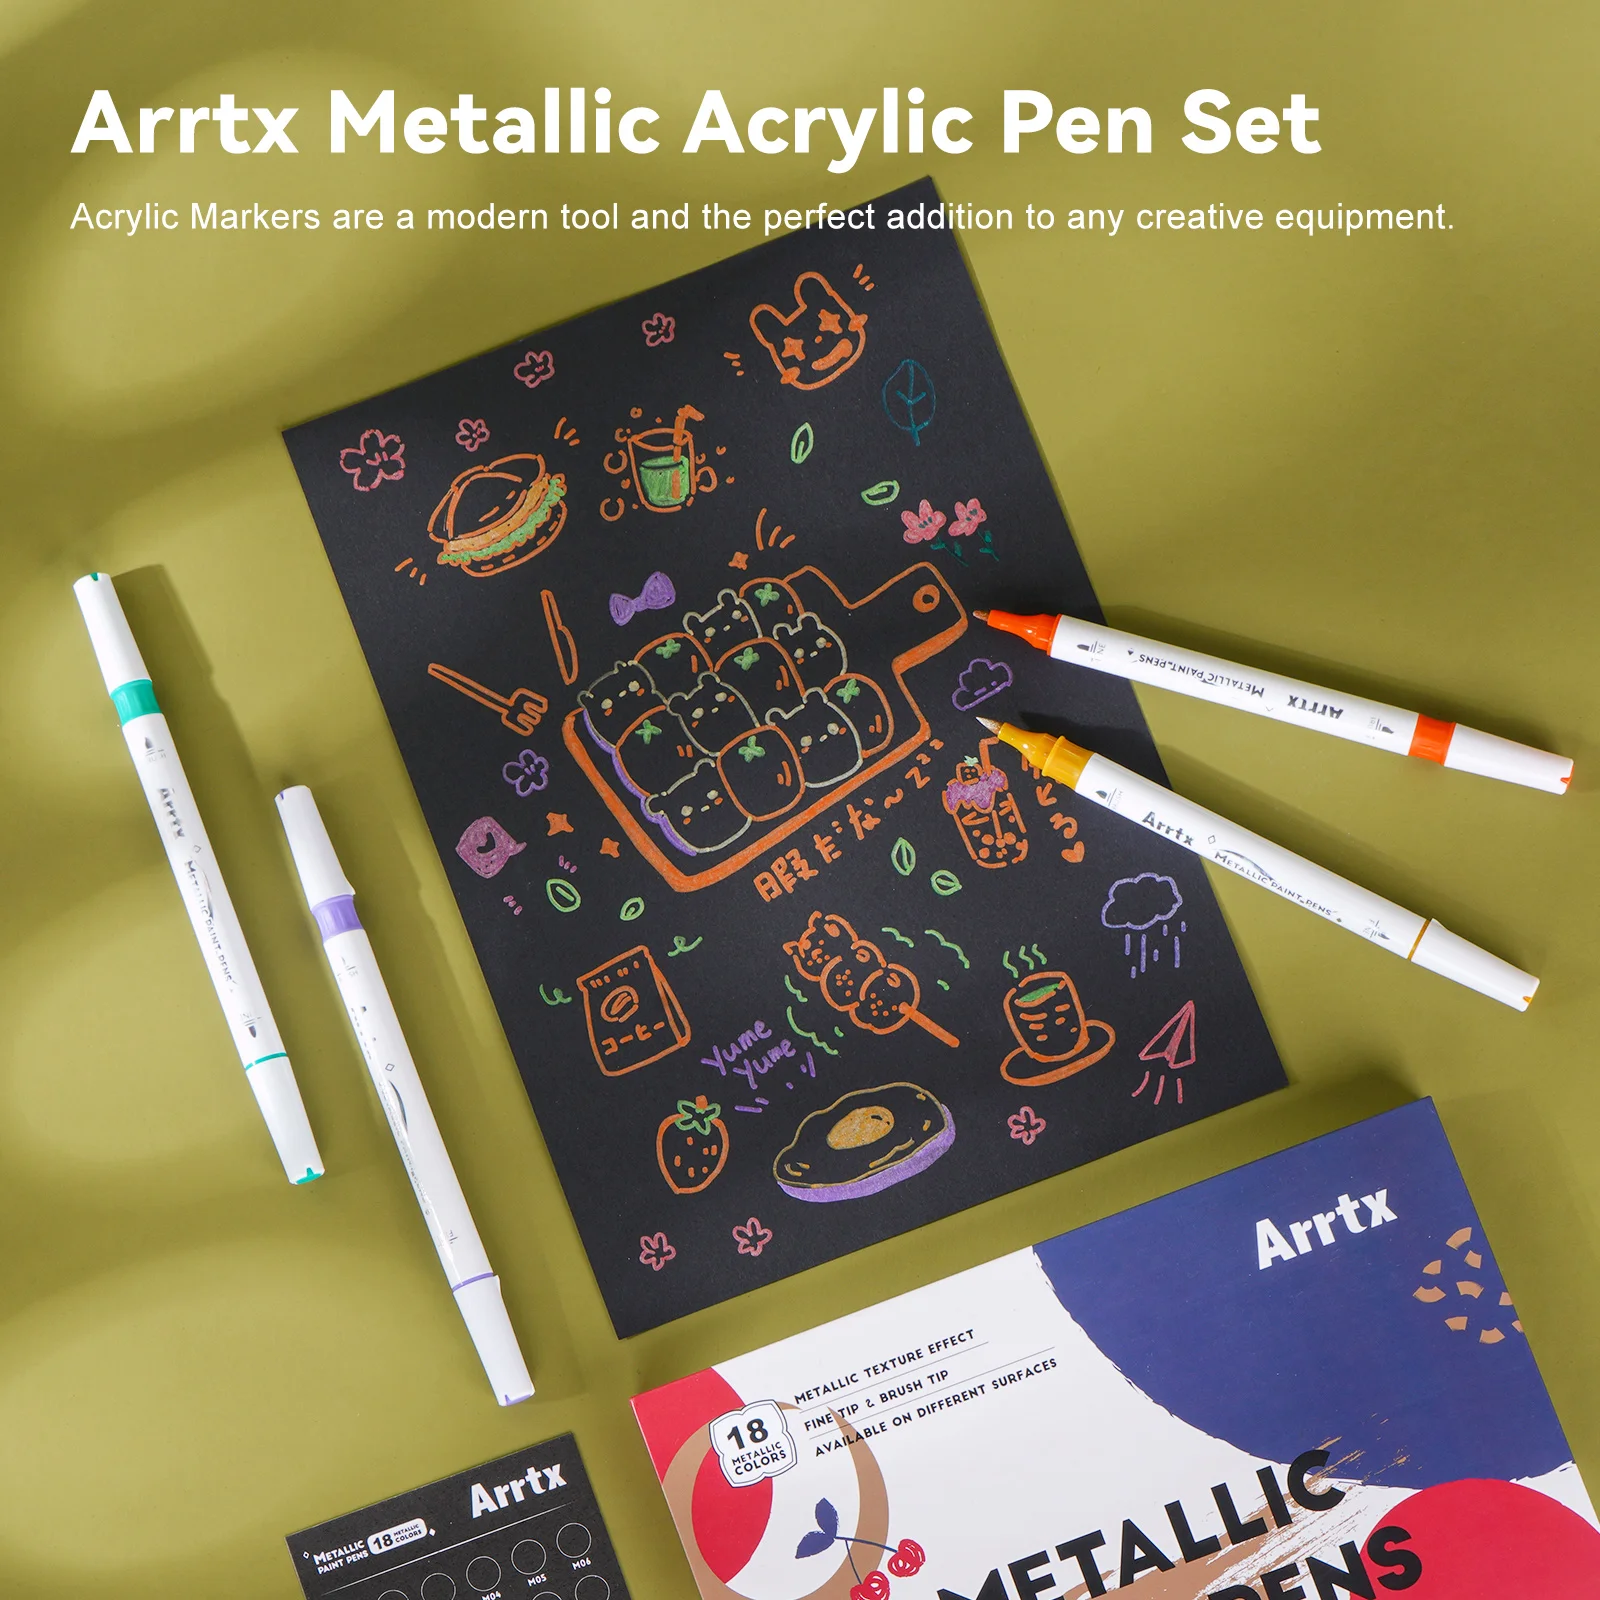 Akrylowe markery Arrtx 18 metaliczny kolor brokatowe pisaki z podwójną końcówką do skały, drewna, tkaniny, plastiku, płótna, papieru, pisanki